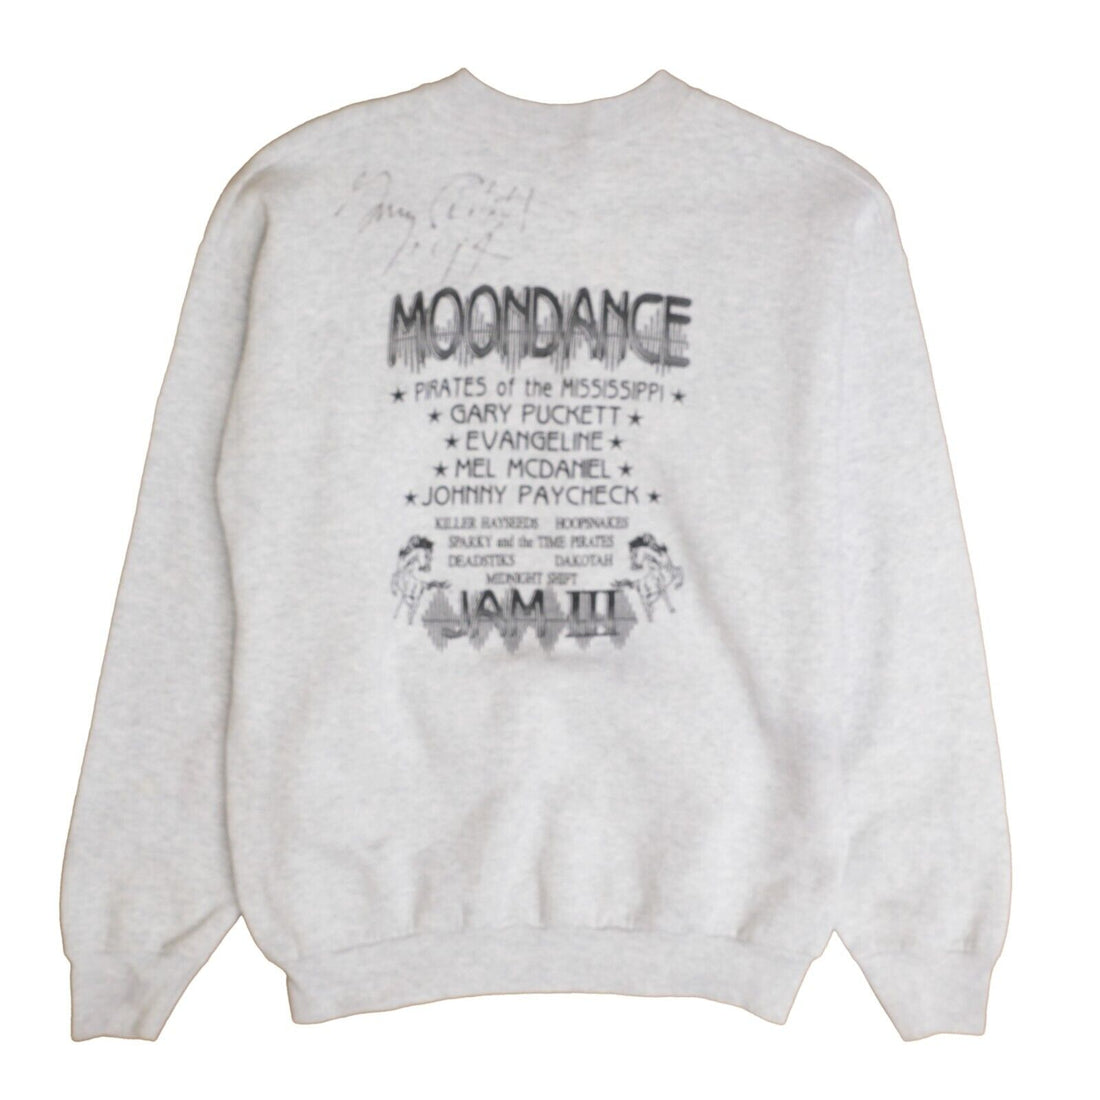 Vintage Moondance Jam III Sweatshirt Crewneck Size XL Music 1994 90s